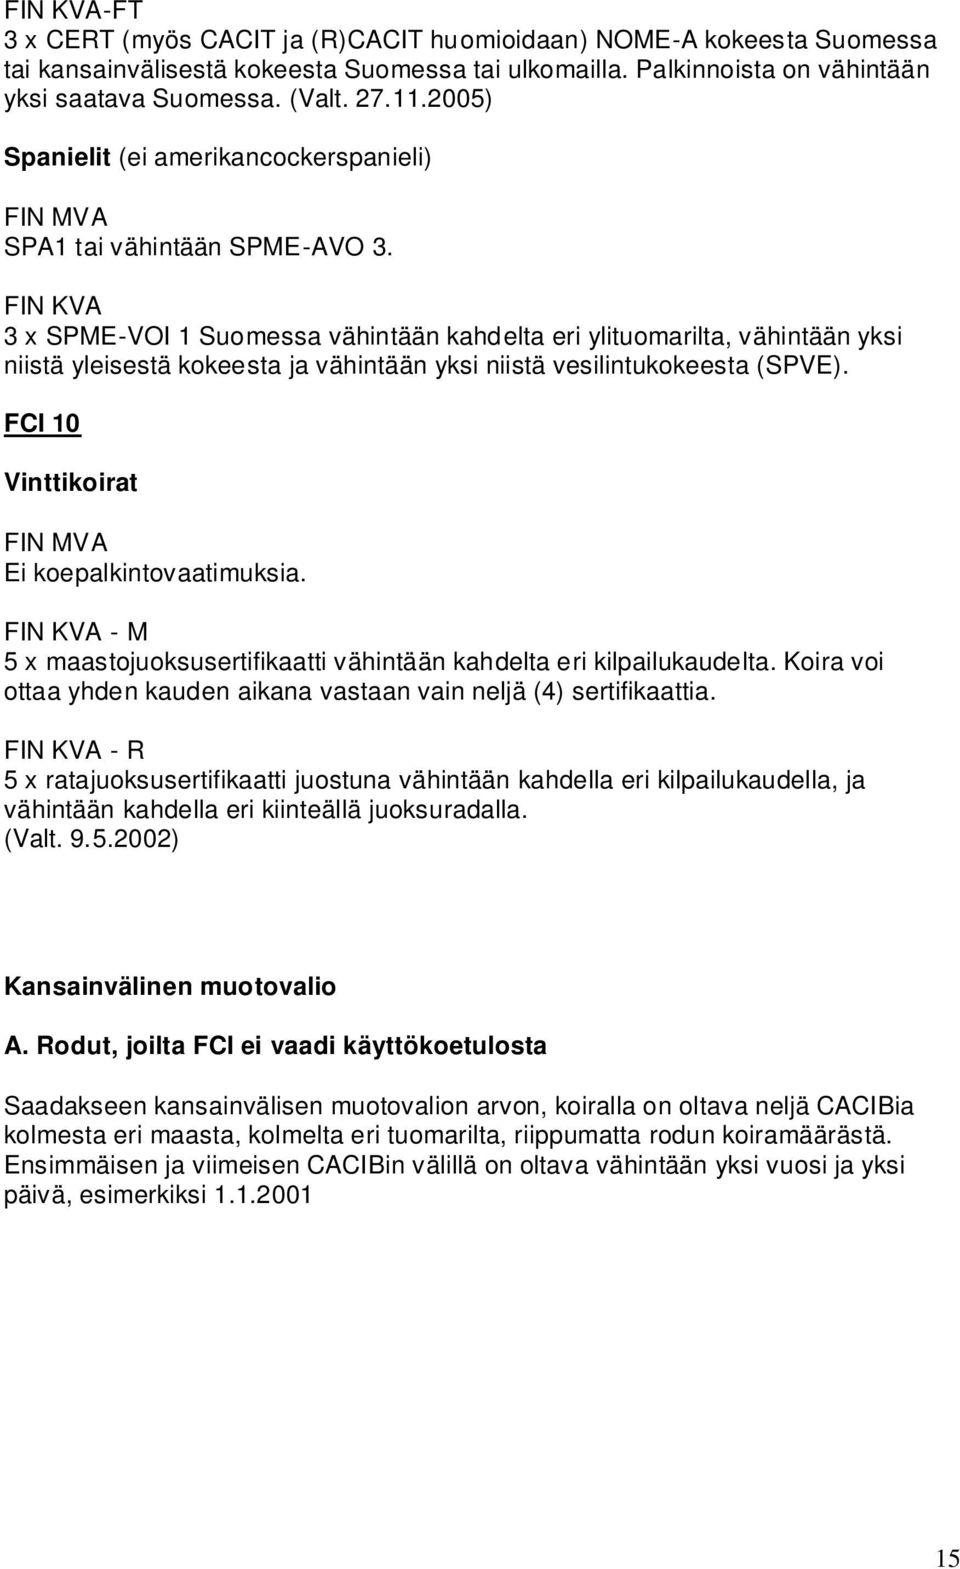 3 x SPME-VOI 1 Suomessa vähintään kahdelta eri ylituomarilta, vähintään yksi niistä yleisestä kokeesta ja vähintään yksi niistä vesilintukokeesta (SPVE).